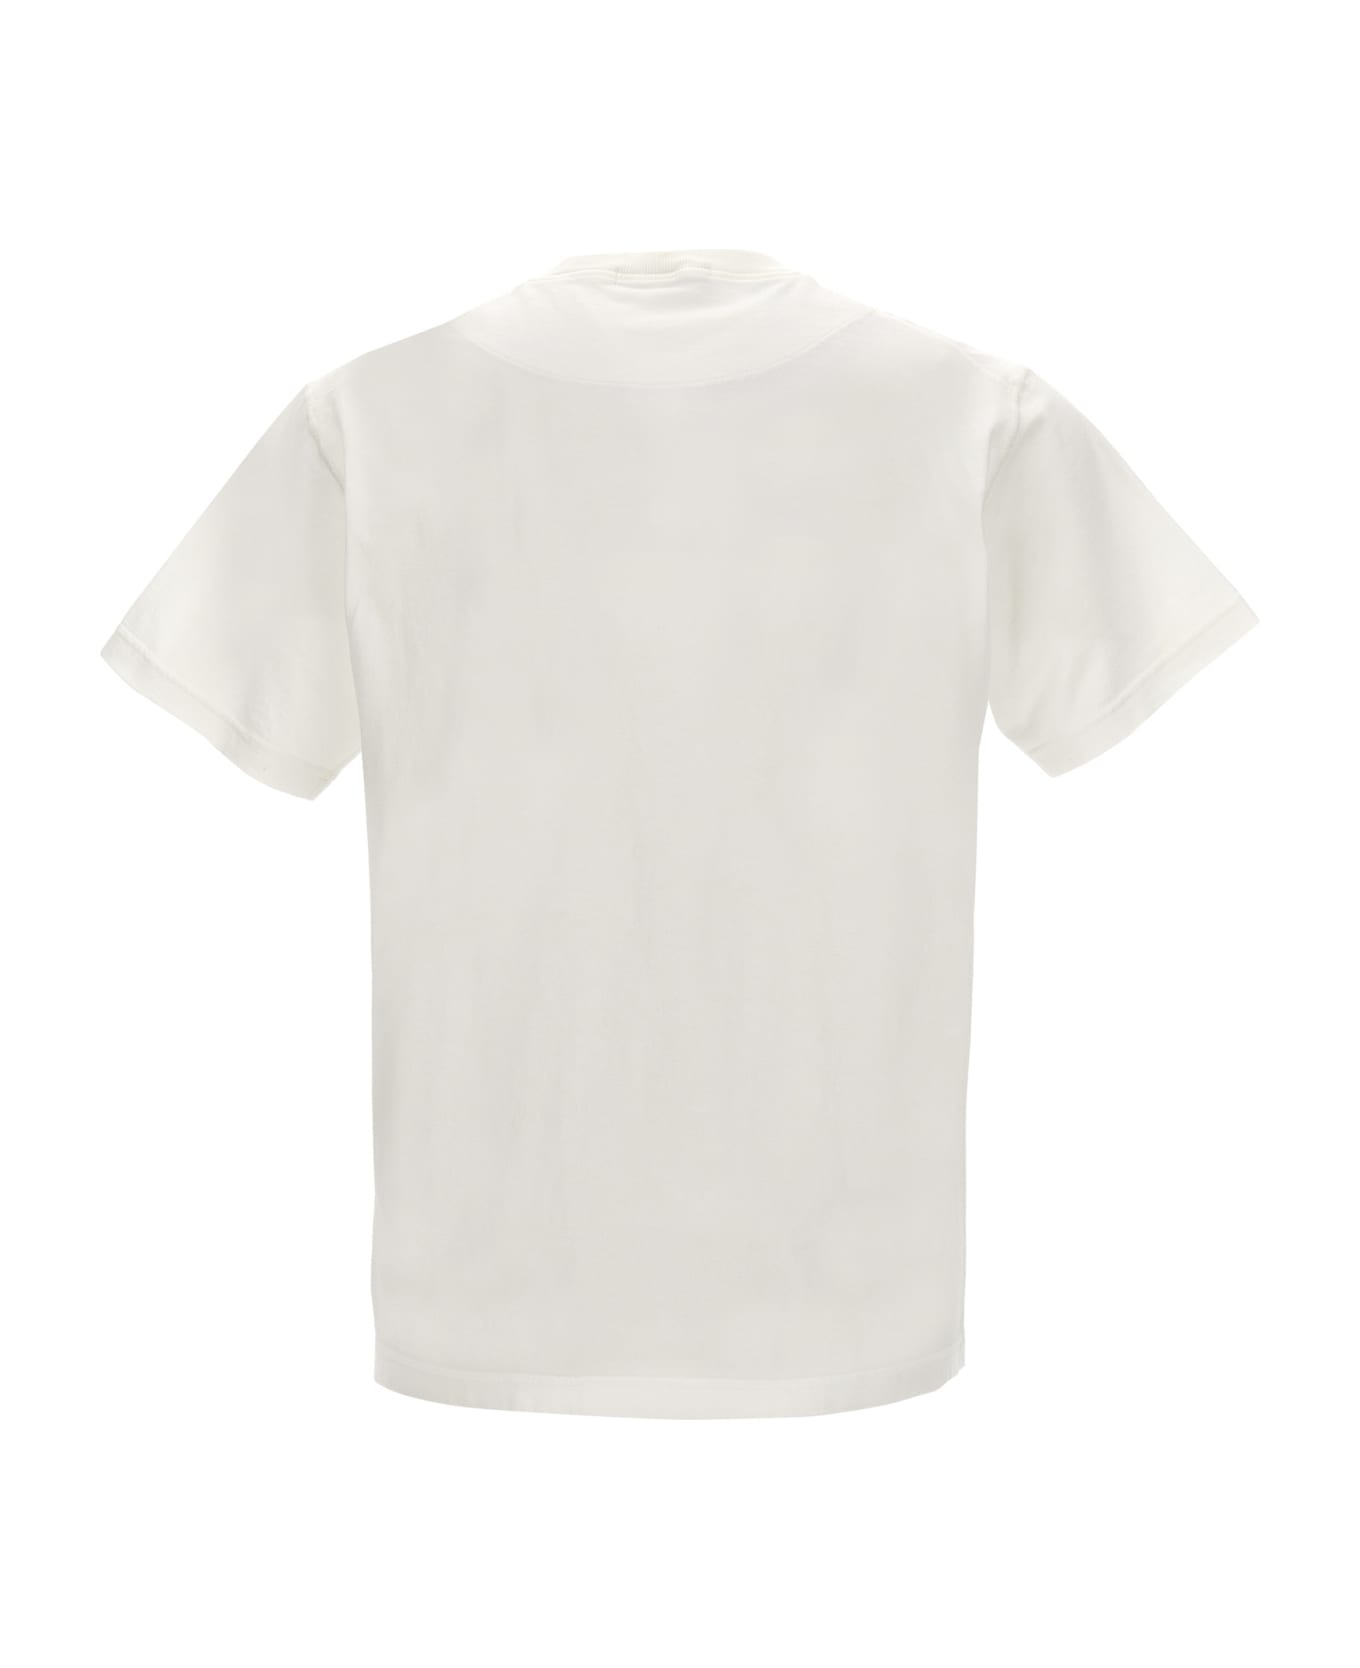 Stone Island T-shirt - White シャツ